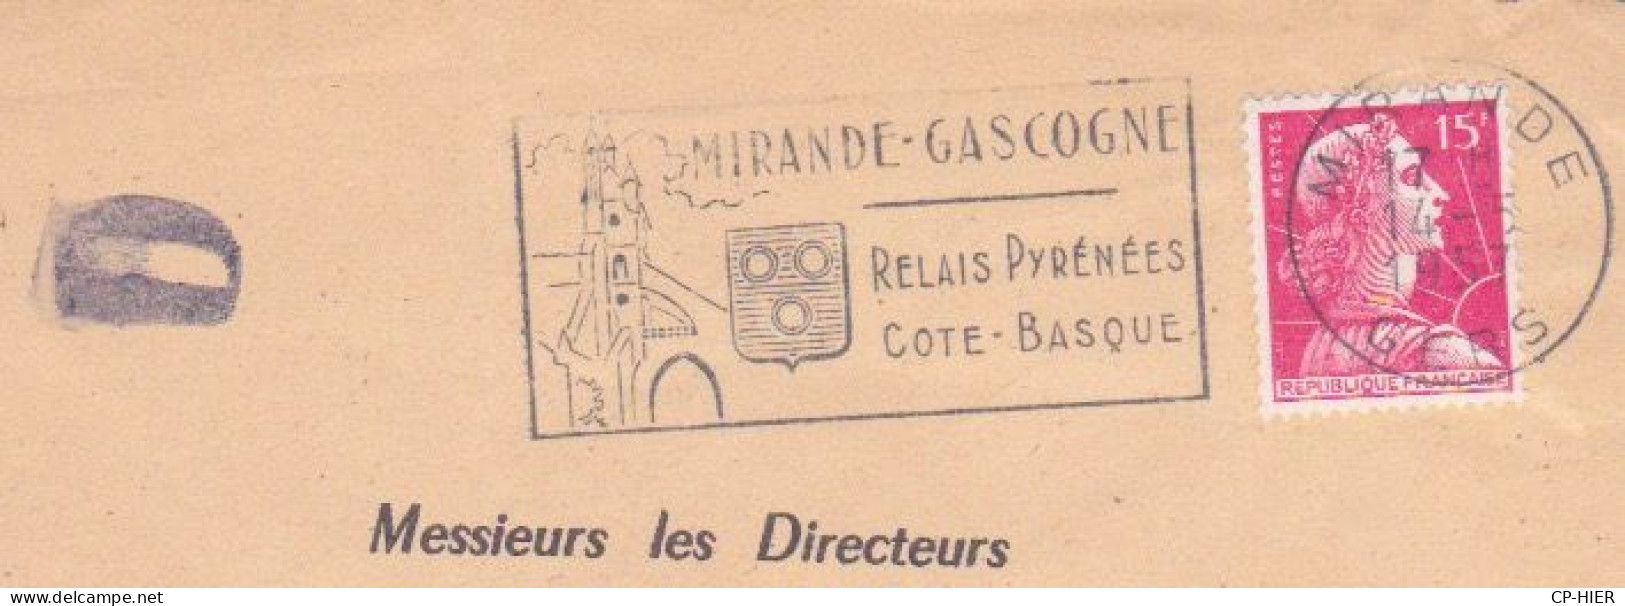 FRANCE - FLAMME  MIRANDE GASCOGNE - RELAIS PYRENEES COTE BASQUE - LETTRE D - ADRESSE CONTENTIEUX EUROPEEN PARIS - Annullamenti Meccanici (pubblicitari)